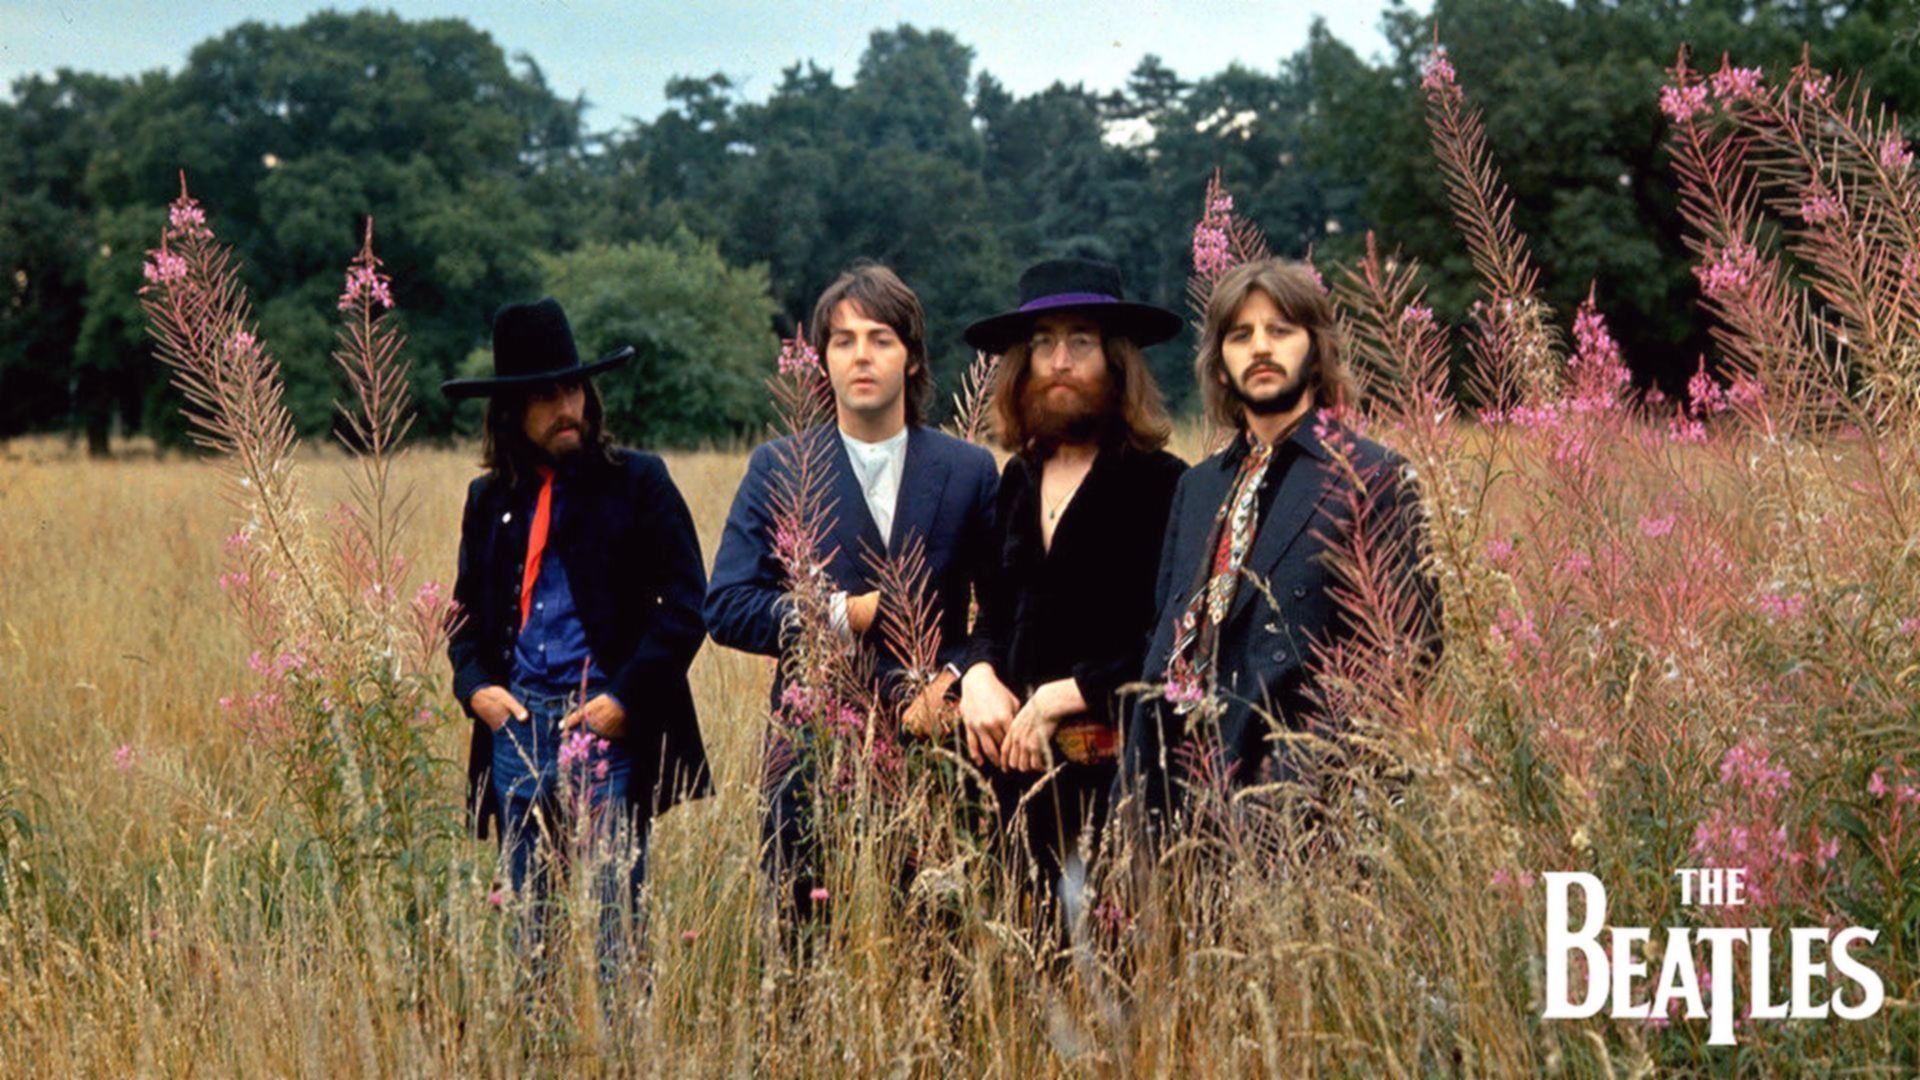 1920x1080 The Beatles Paul McCartney John Lennon George Harrison Ringo Starr #men #musician #beard #1080P #wallpaper #hdwal&acirc;&#128;&brvbar; | John lennon, Beatles, Strawberry fields forever